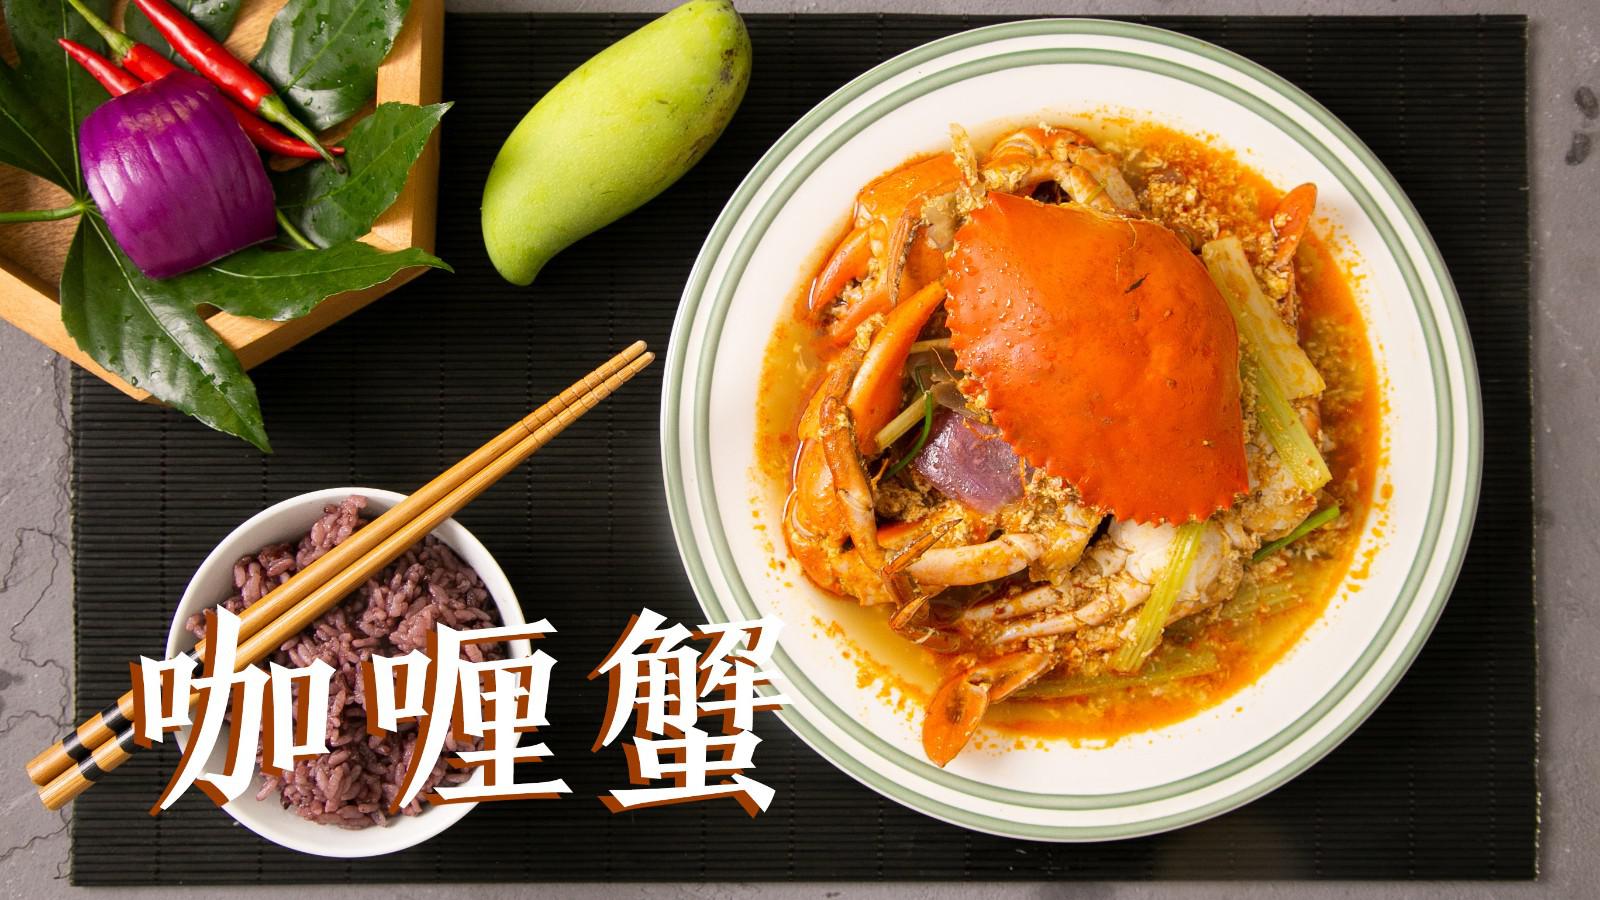 连盘子都要舔光了了的泰式咖喱蟹,好好味!